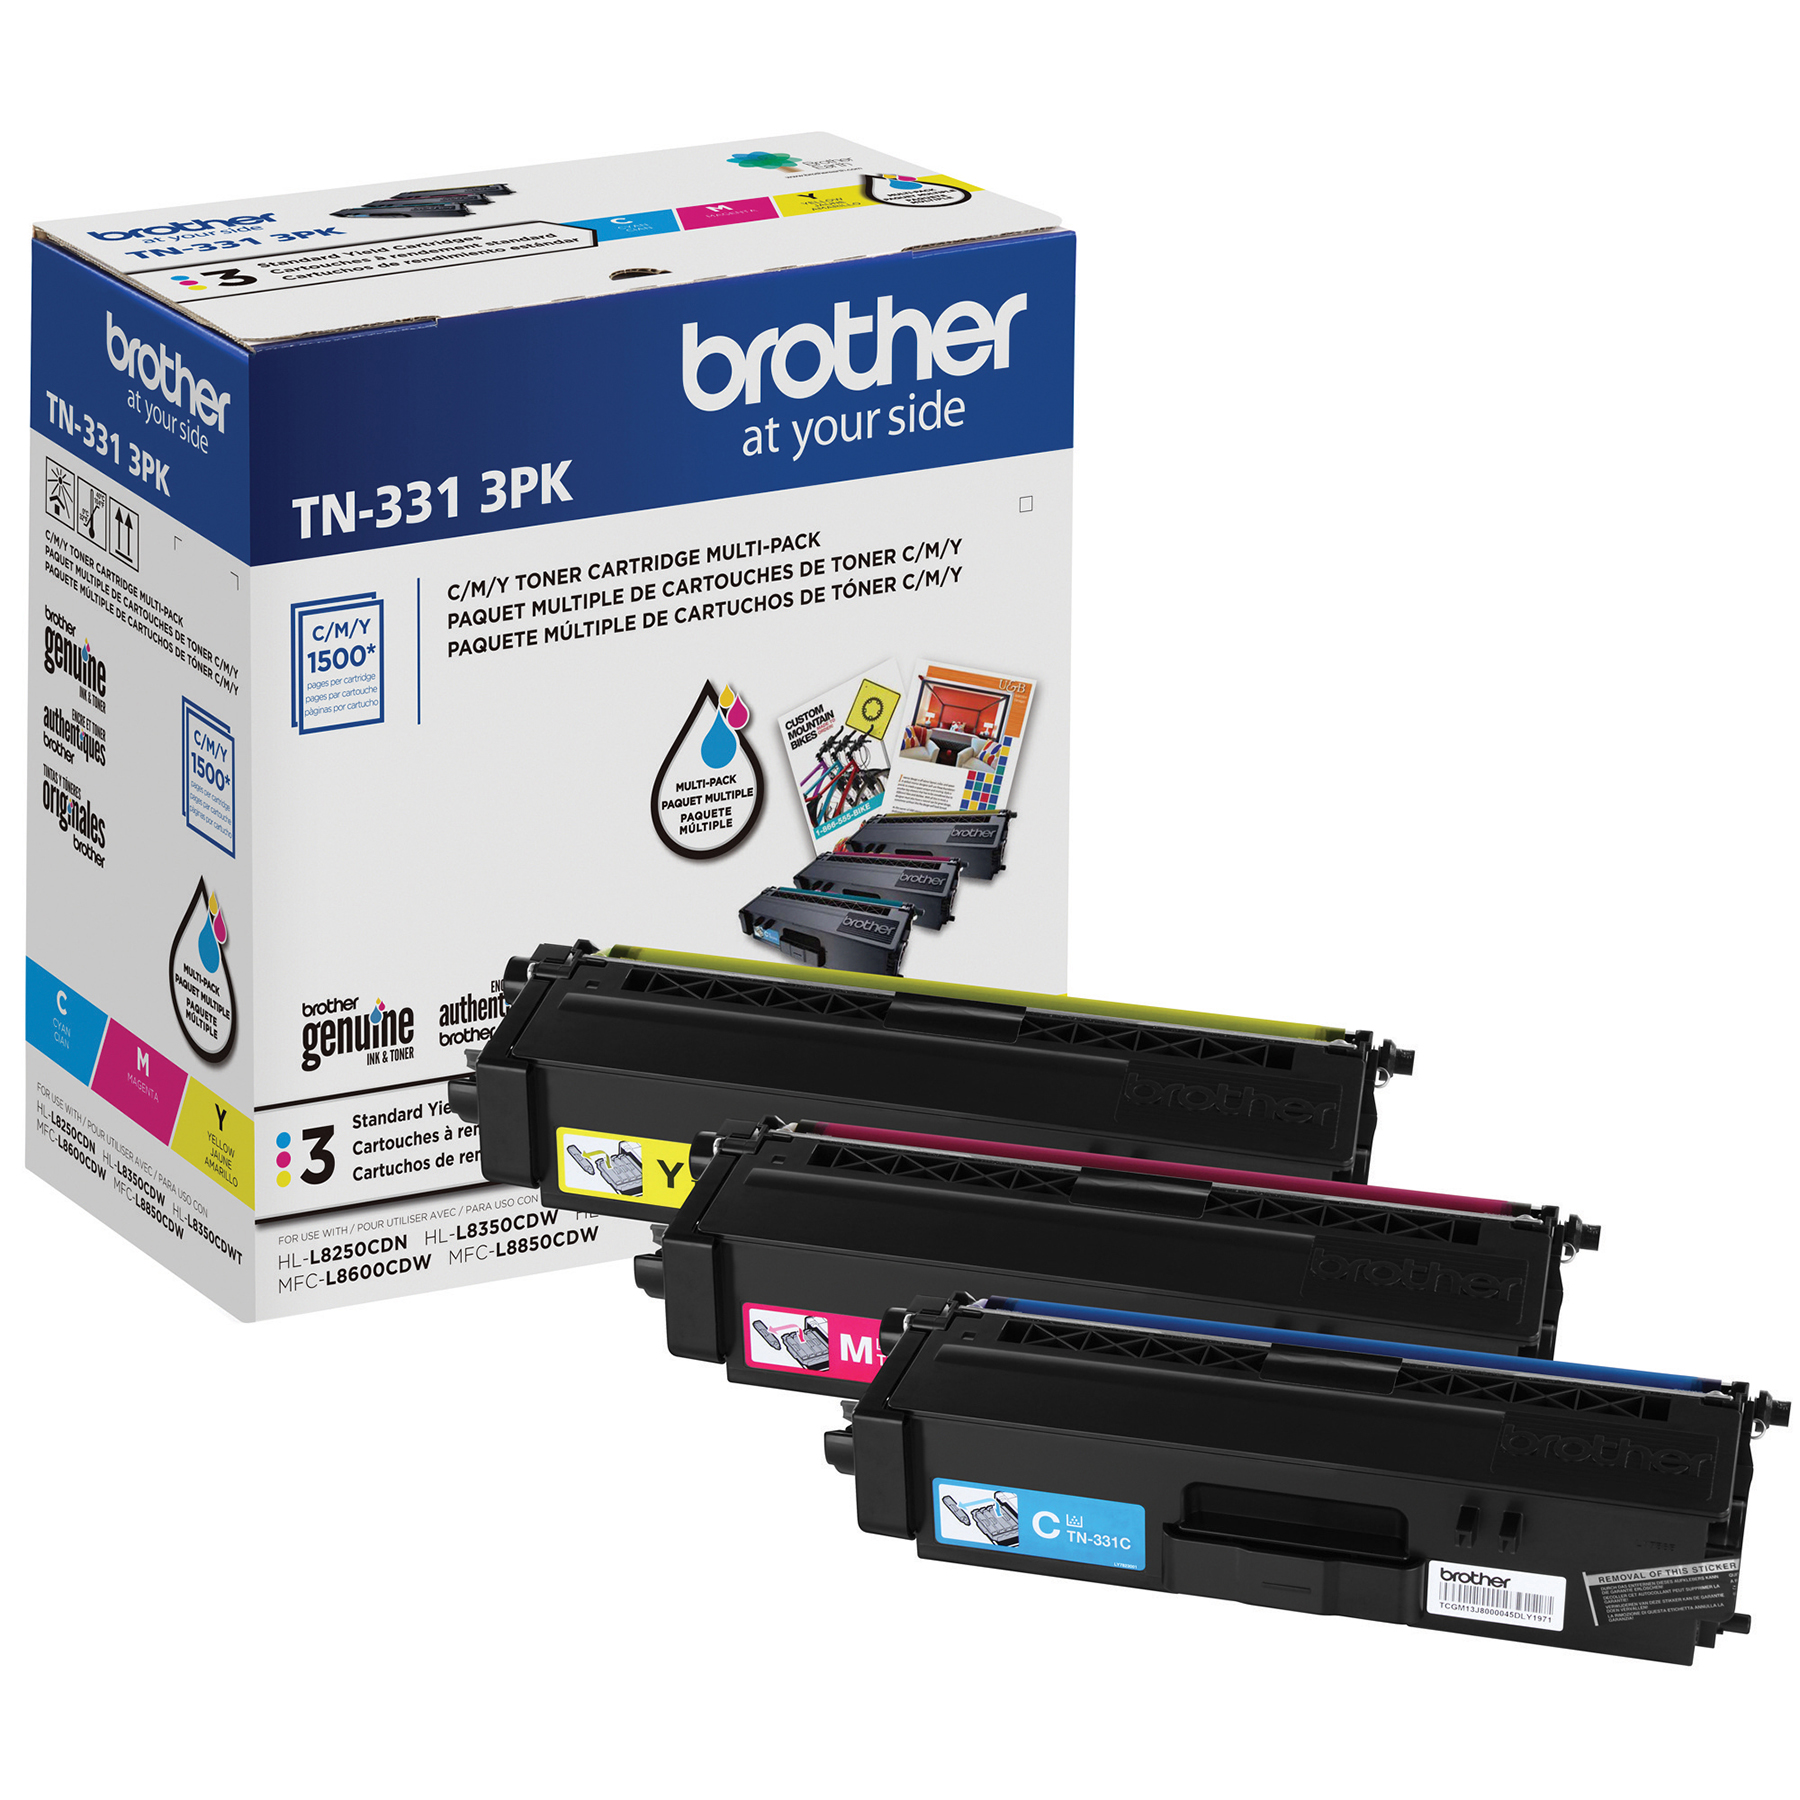 Comment resetter les cartouches de toner TN3380 de votre imprimante Brother  ? - Webcartouche